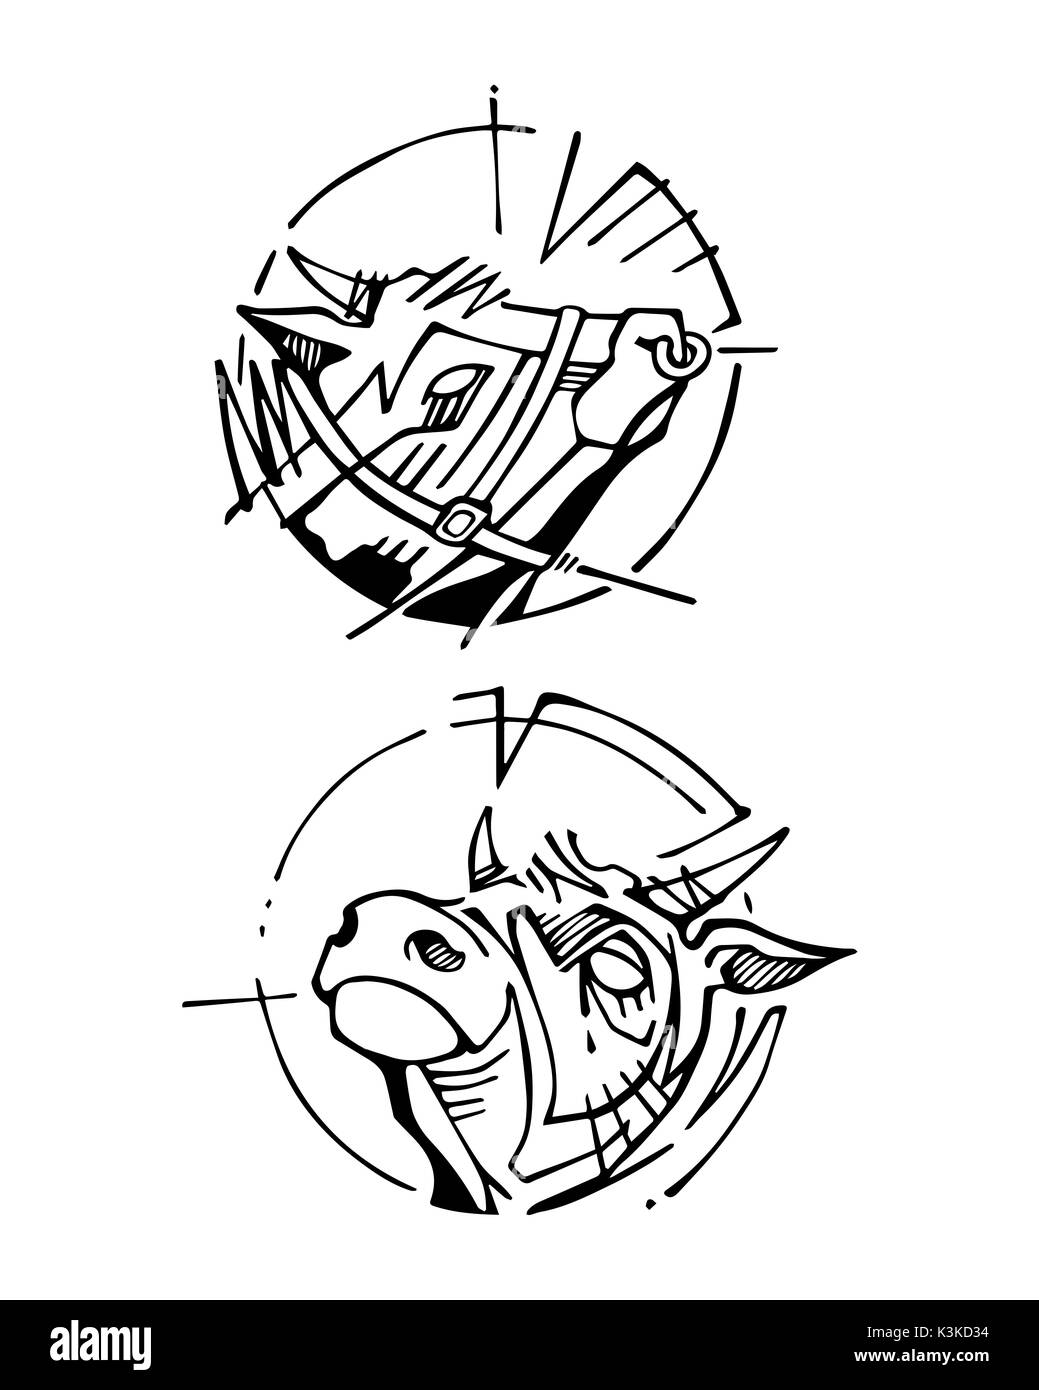 Hand drawn vector illustration ou dessin à l'encre de certaines têtes de vache Banque D'Images